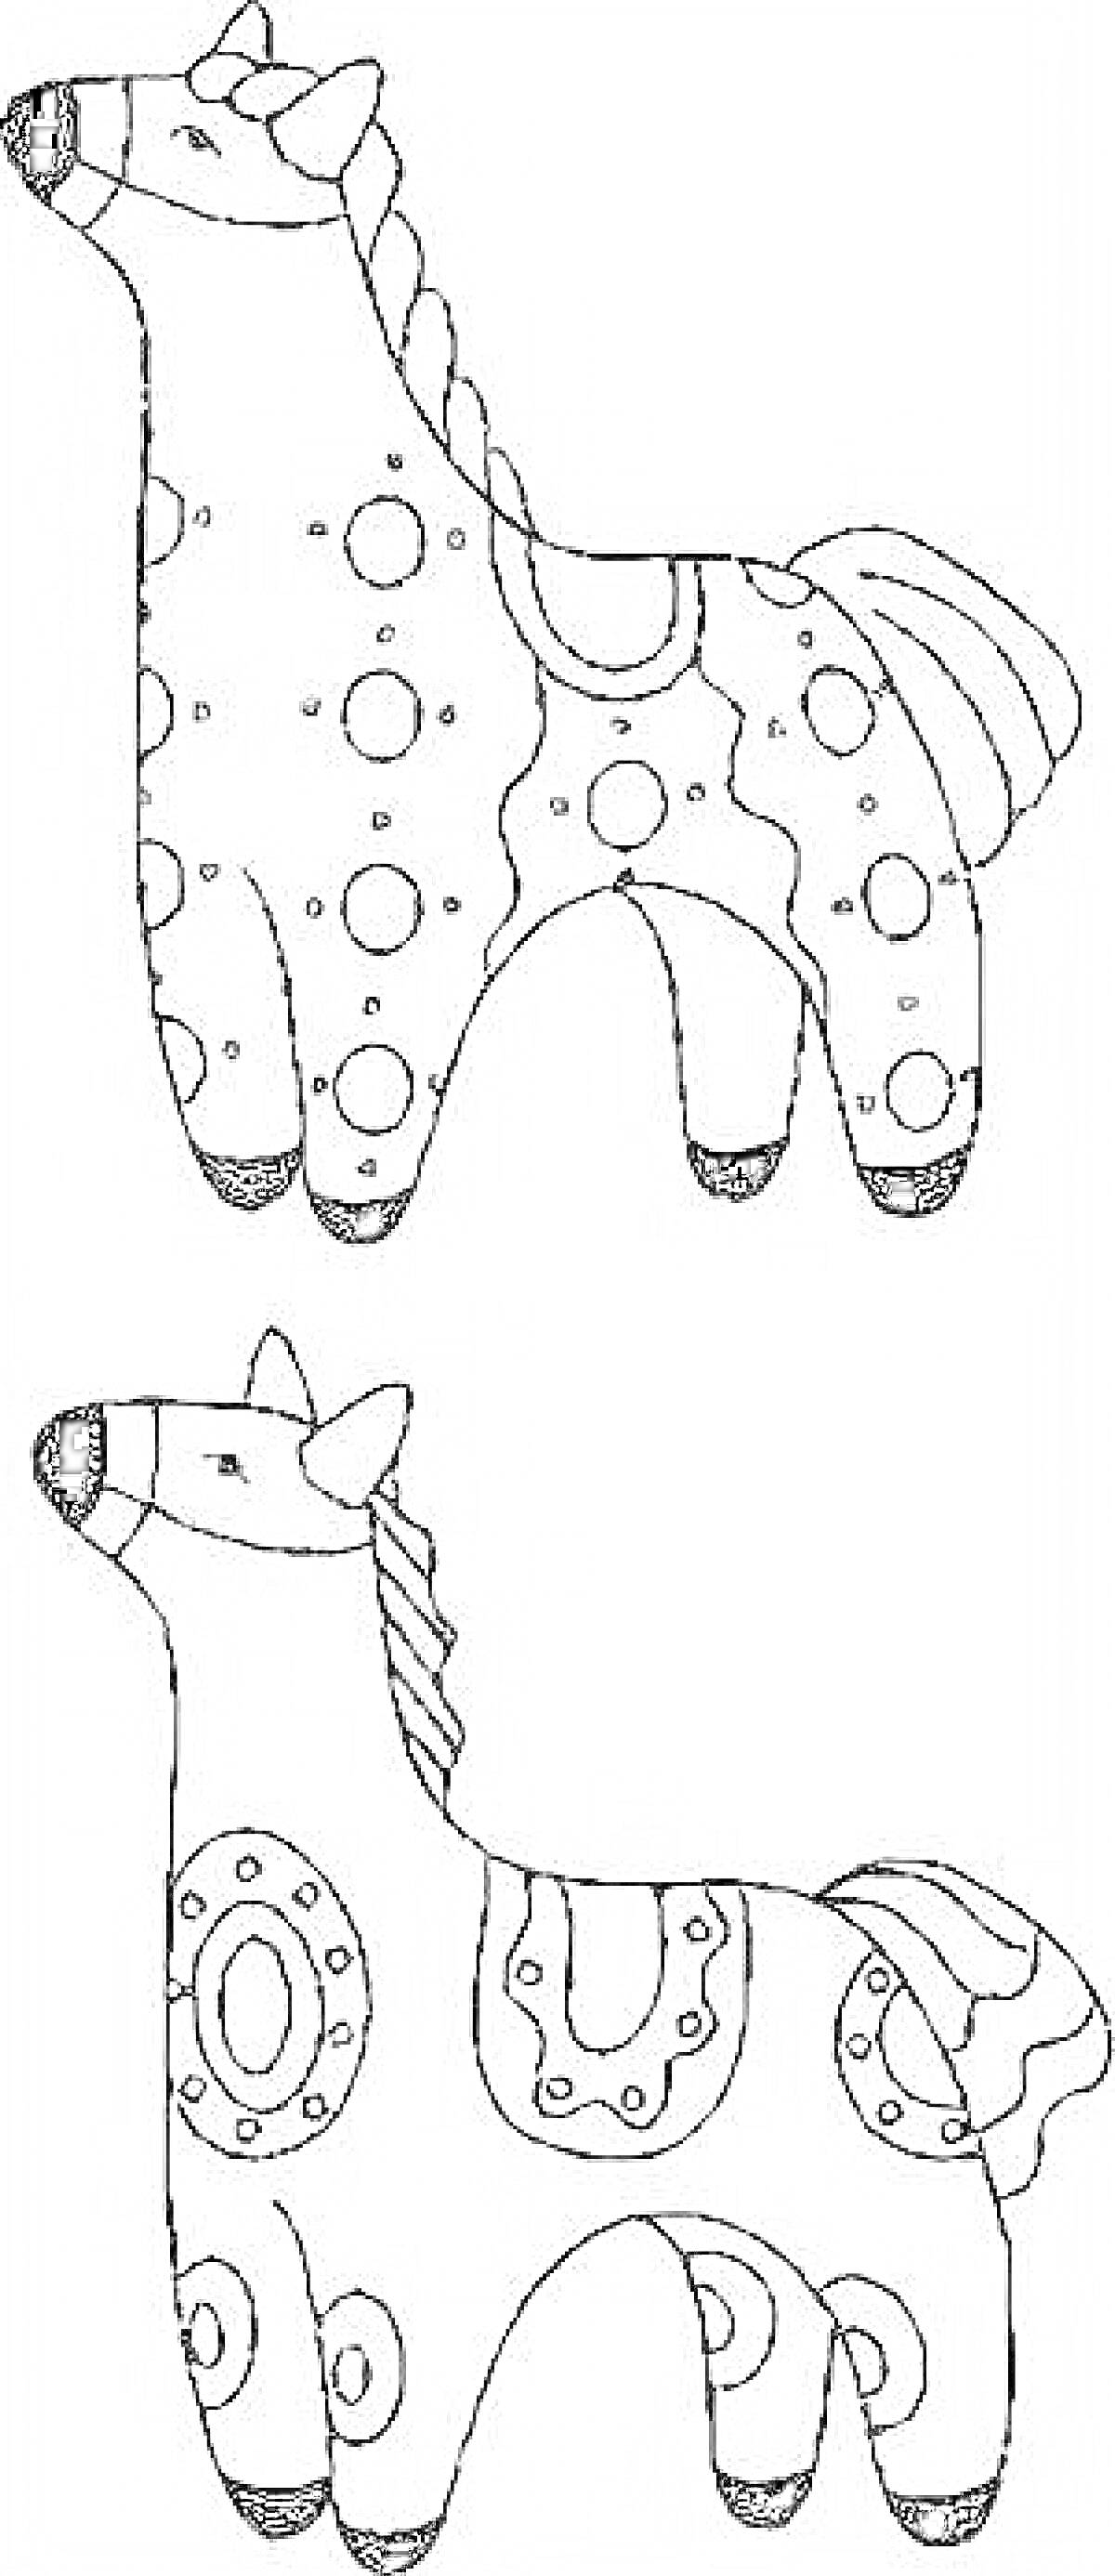 Раскраска Дымковская лошадка с узорами в виде кругов и волн